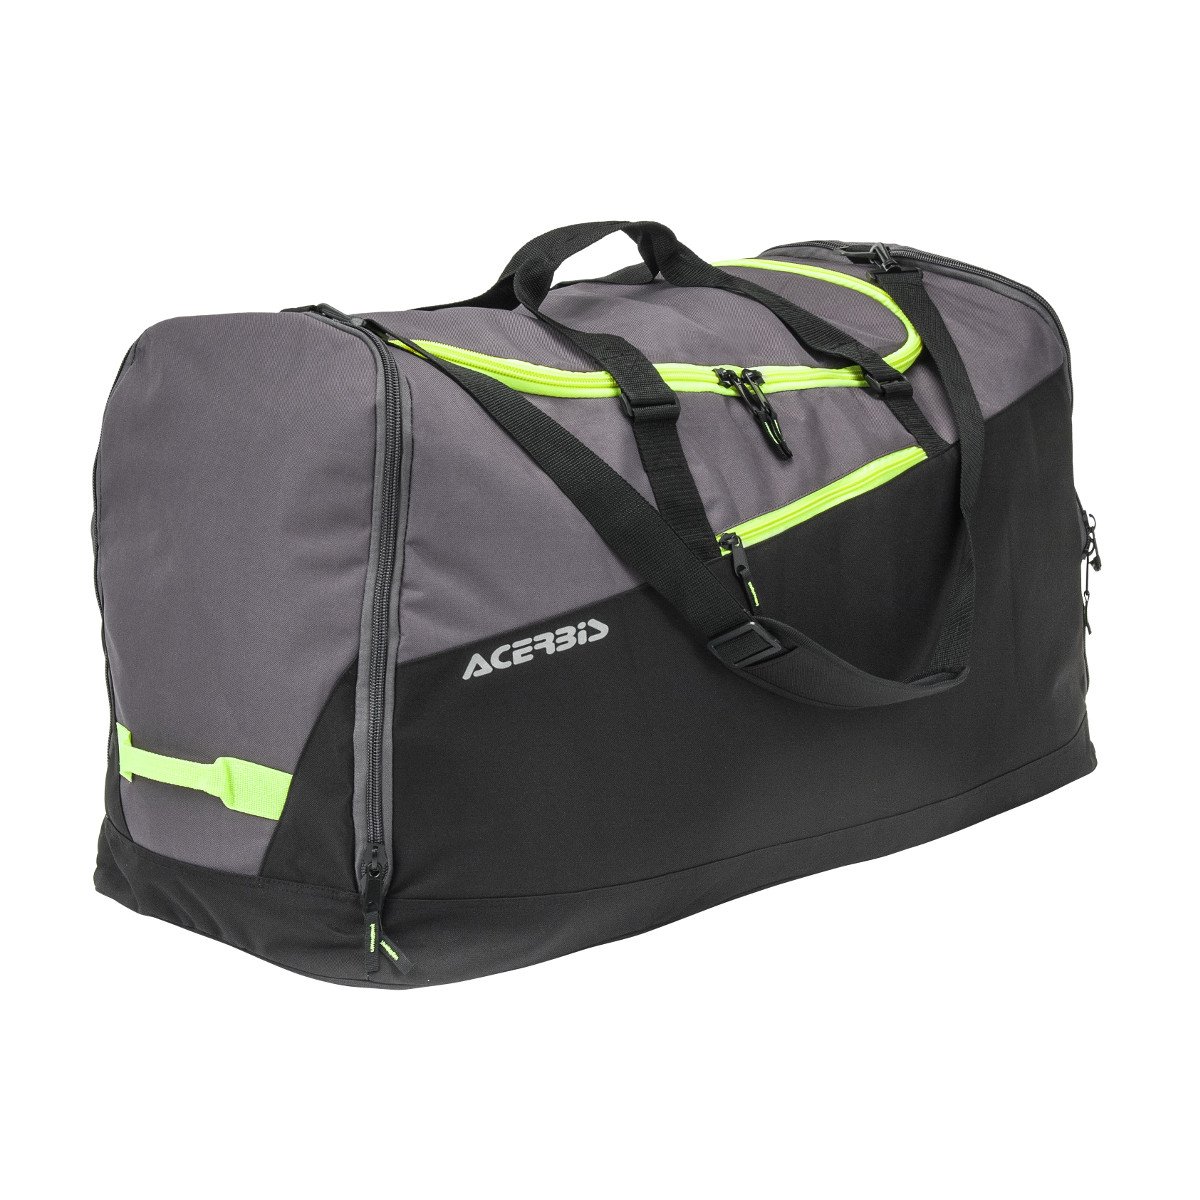 Acerbis Sac de Sport Cargo Bag 180 Litre - Noir/Jaune